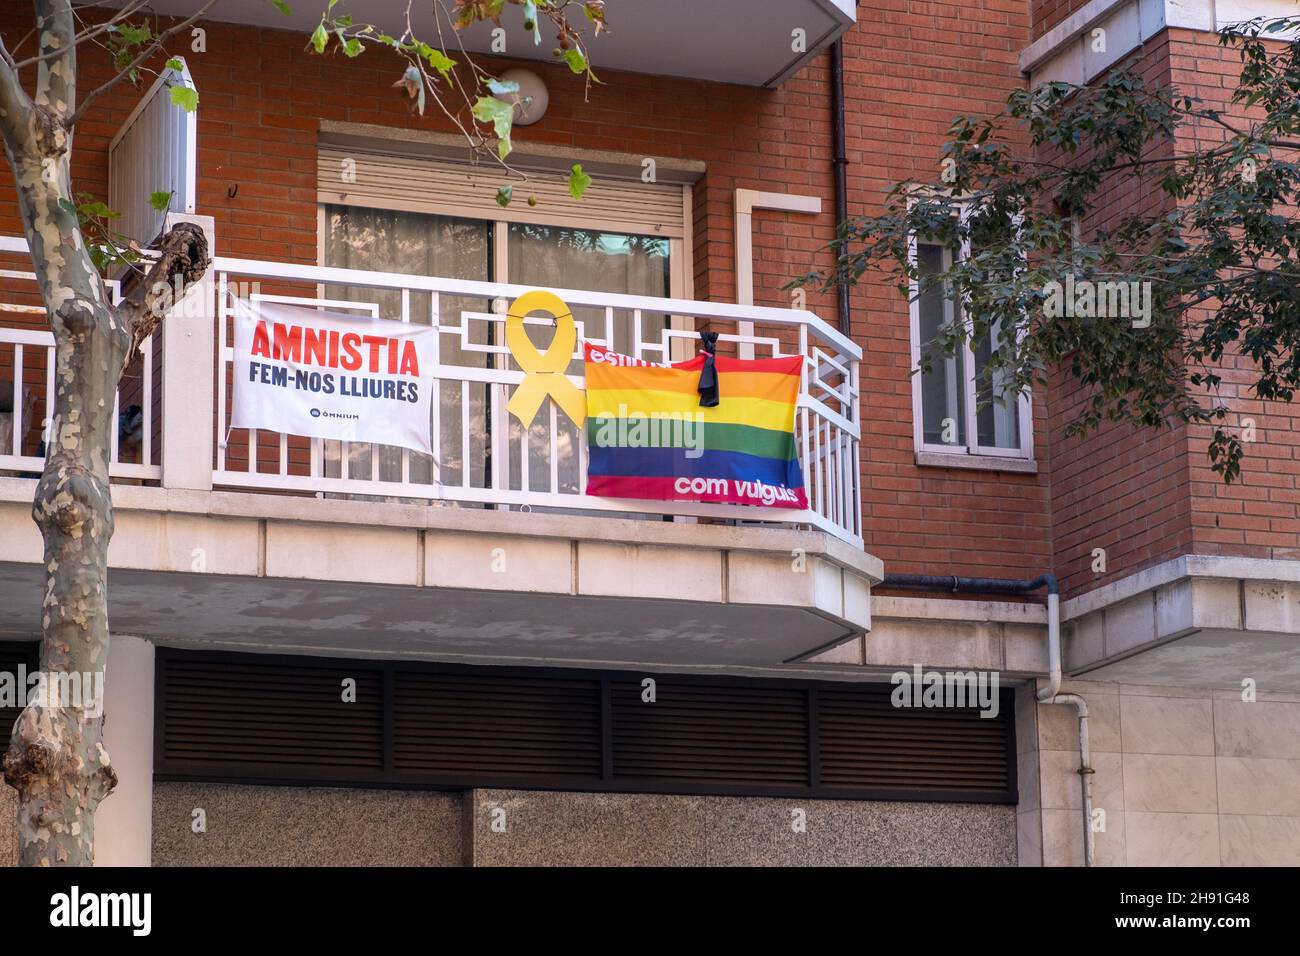 Barcelone, Espagne - 5 novembre 2021 : amnistia fem-nos lliures et drapeaux LGBTQ, Editorial. Banque D'Images